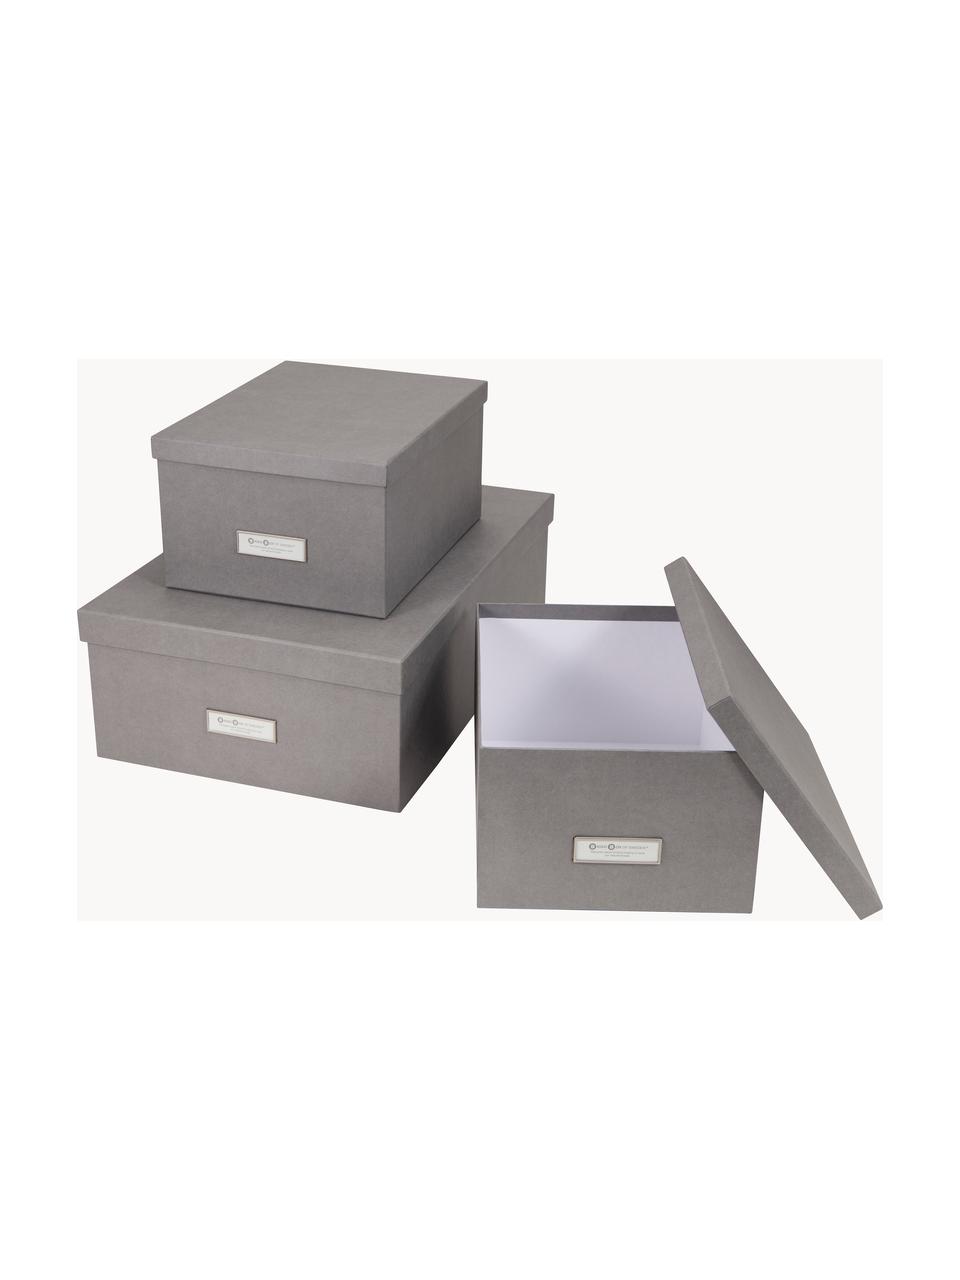 Aufbewahrungsboxen Inge, 3er-Set, Box: Fester, laminierter Karto, Dunkelgrau, Set mit verschiedenen Größen